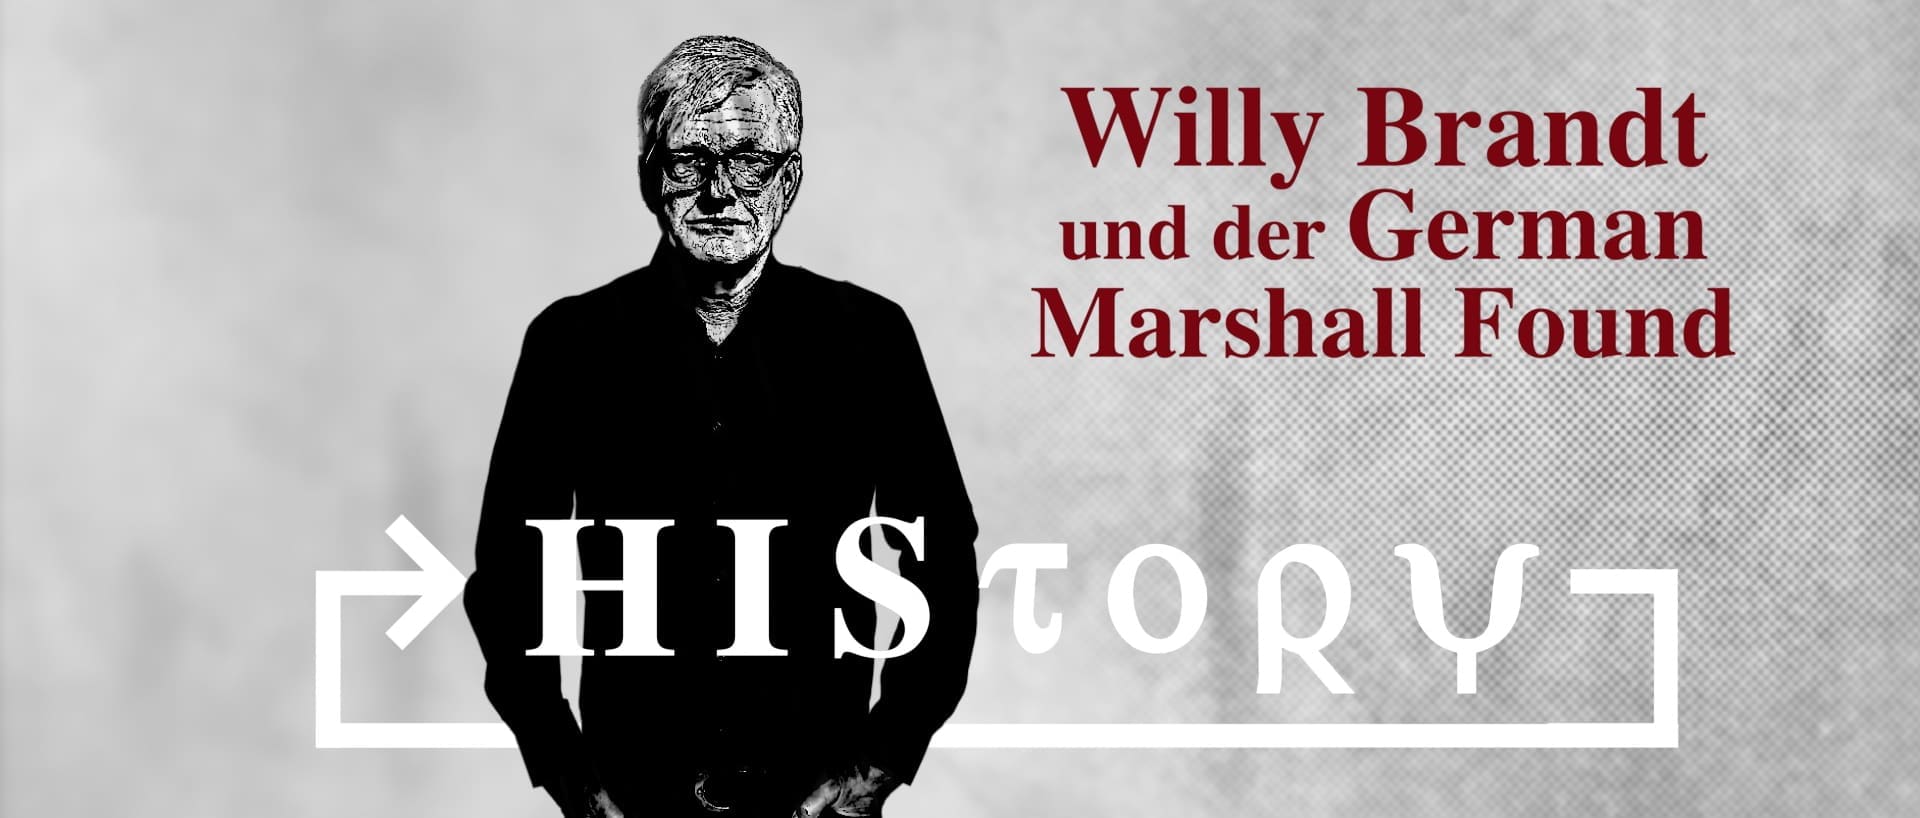 geschichte:-willy-brandt-und-der-german-marshall-fund